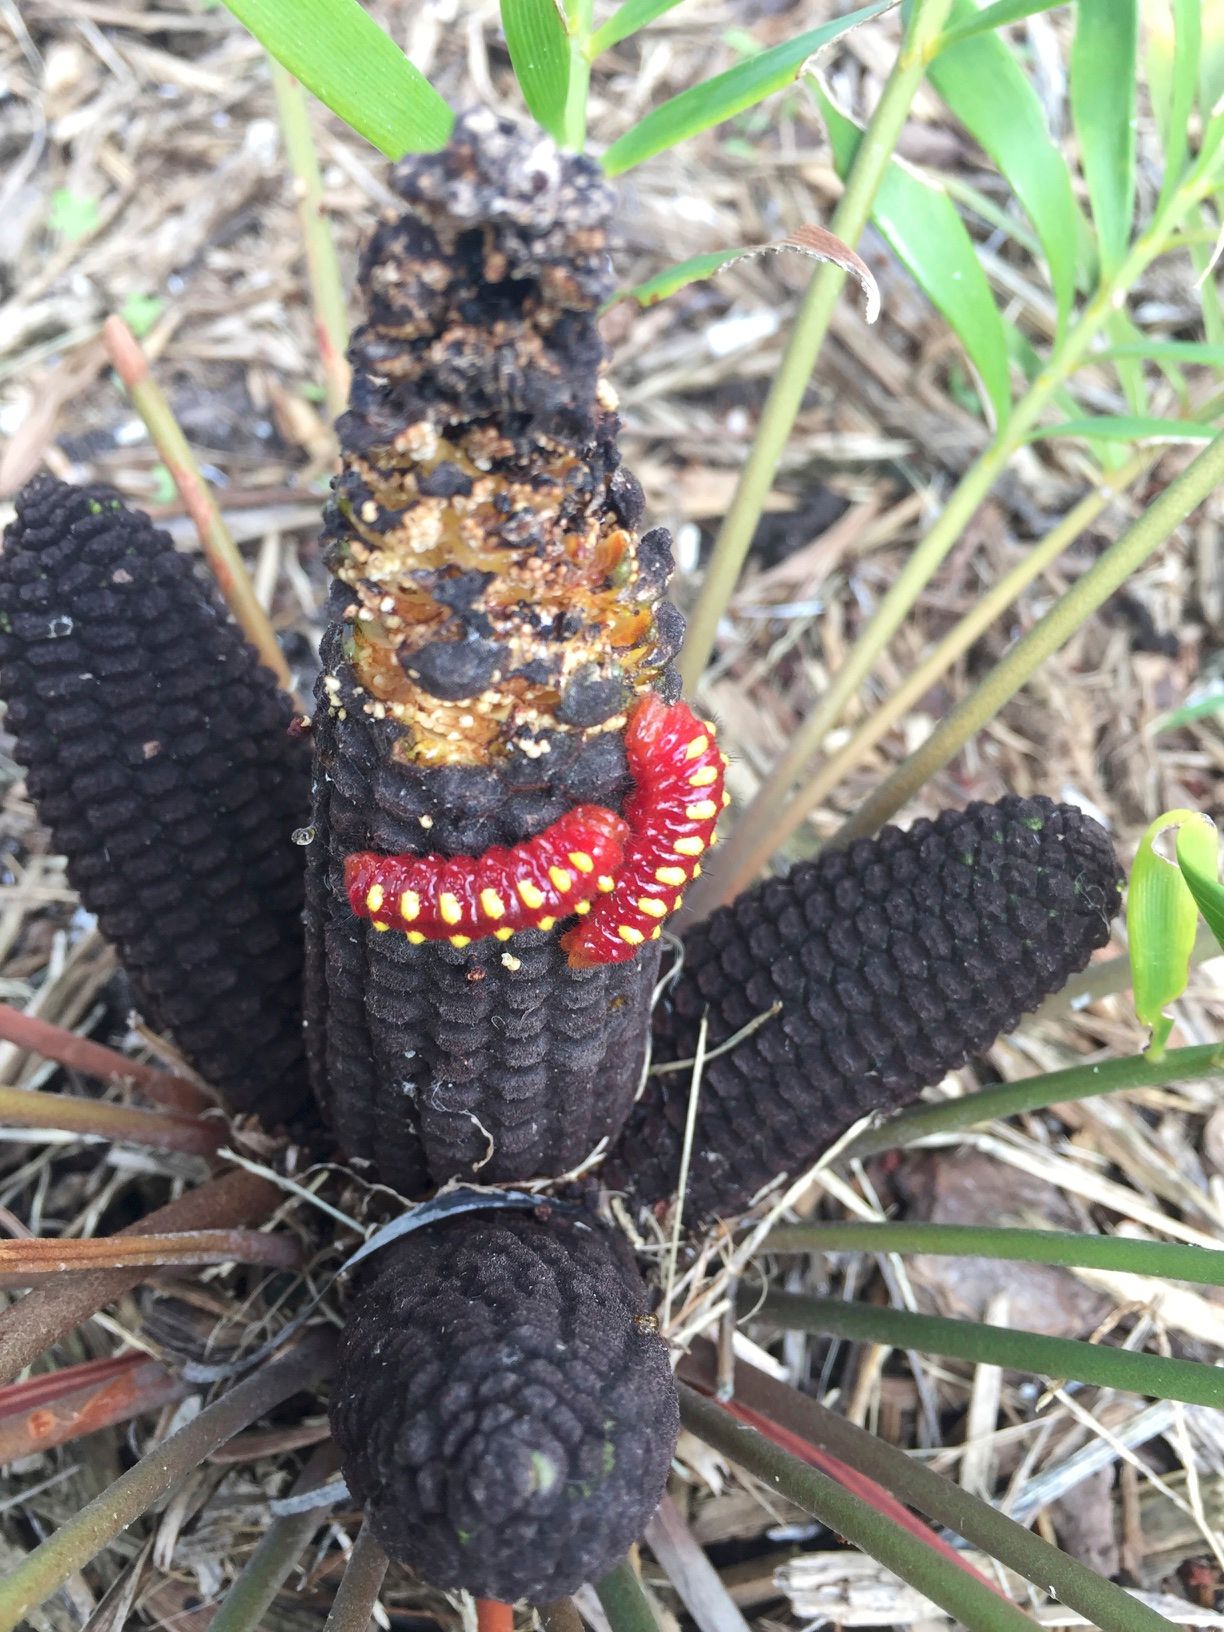 Atala Larvae eating Coontie Seed Cone by Adam Skowronski, Flickr